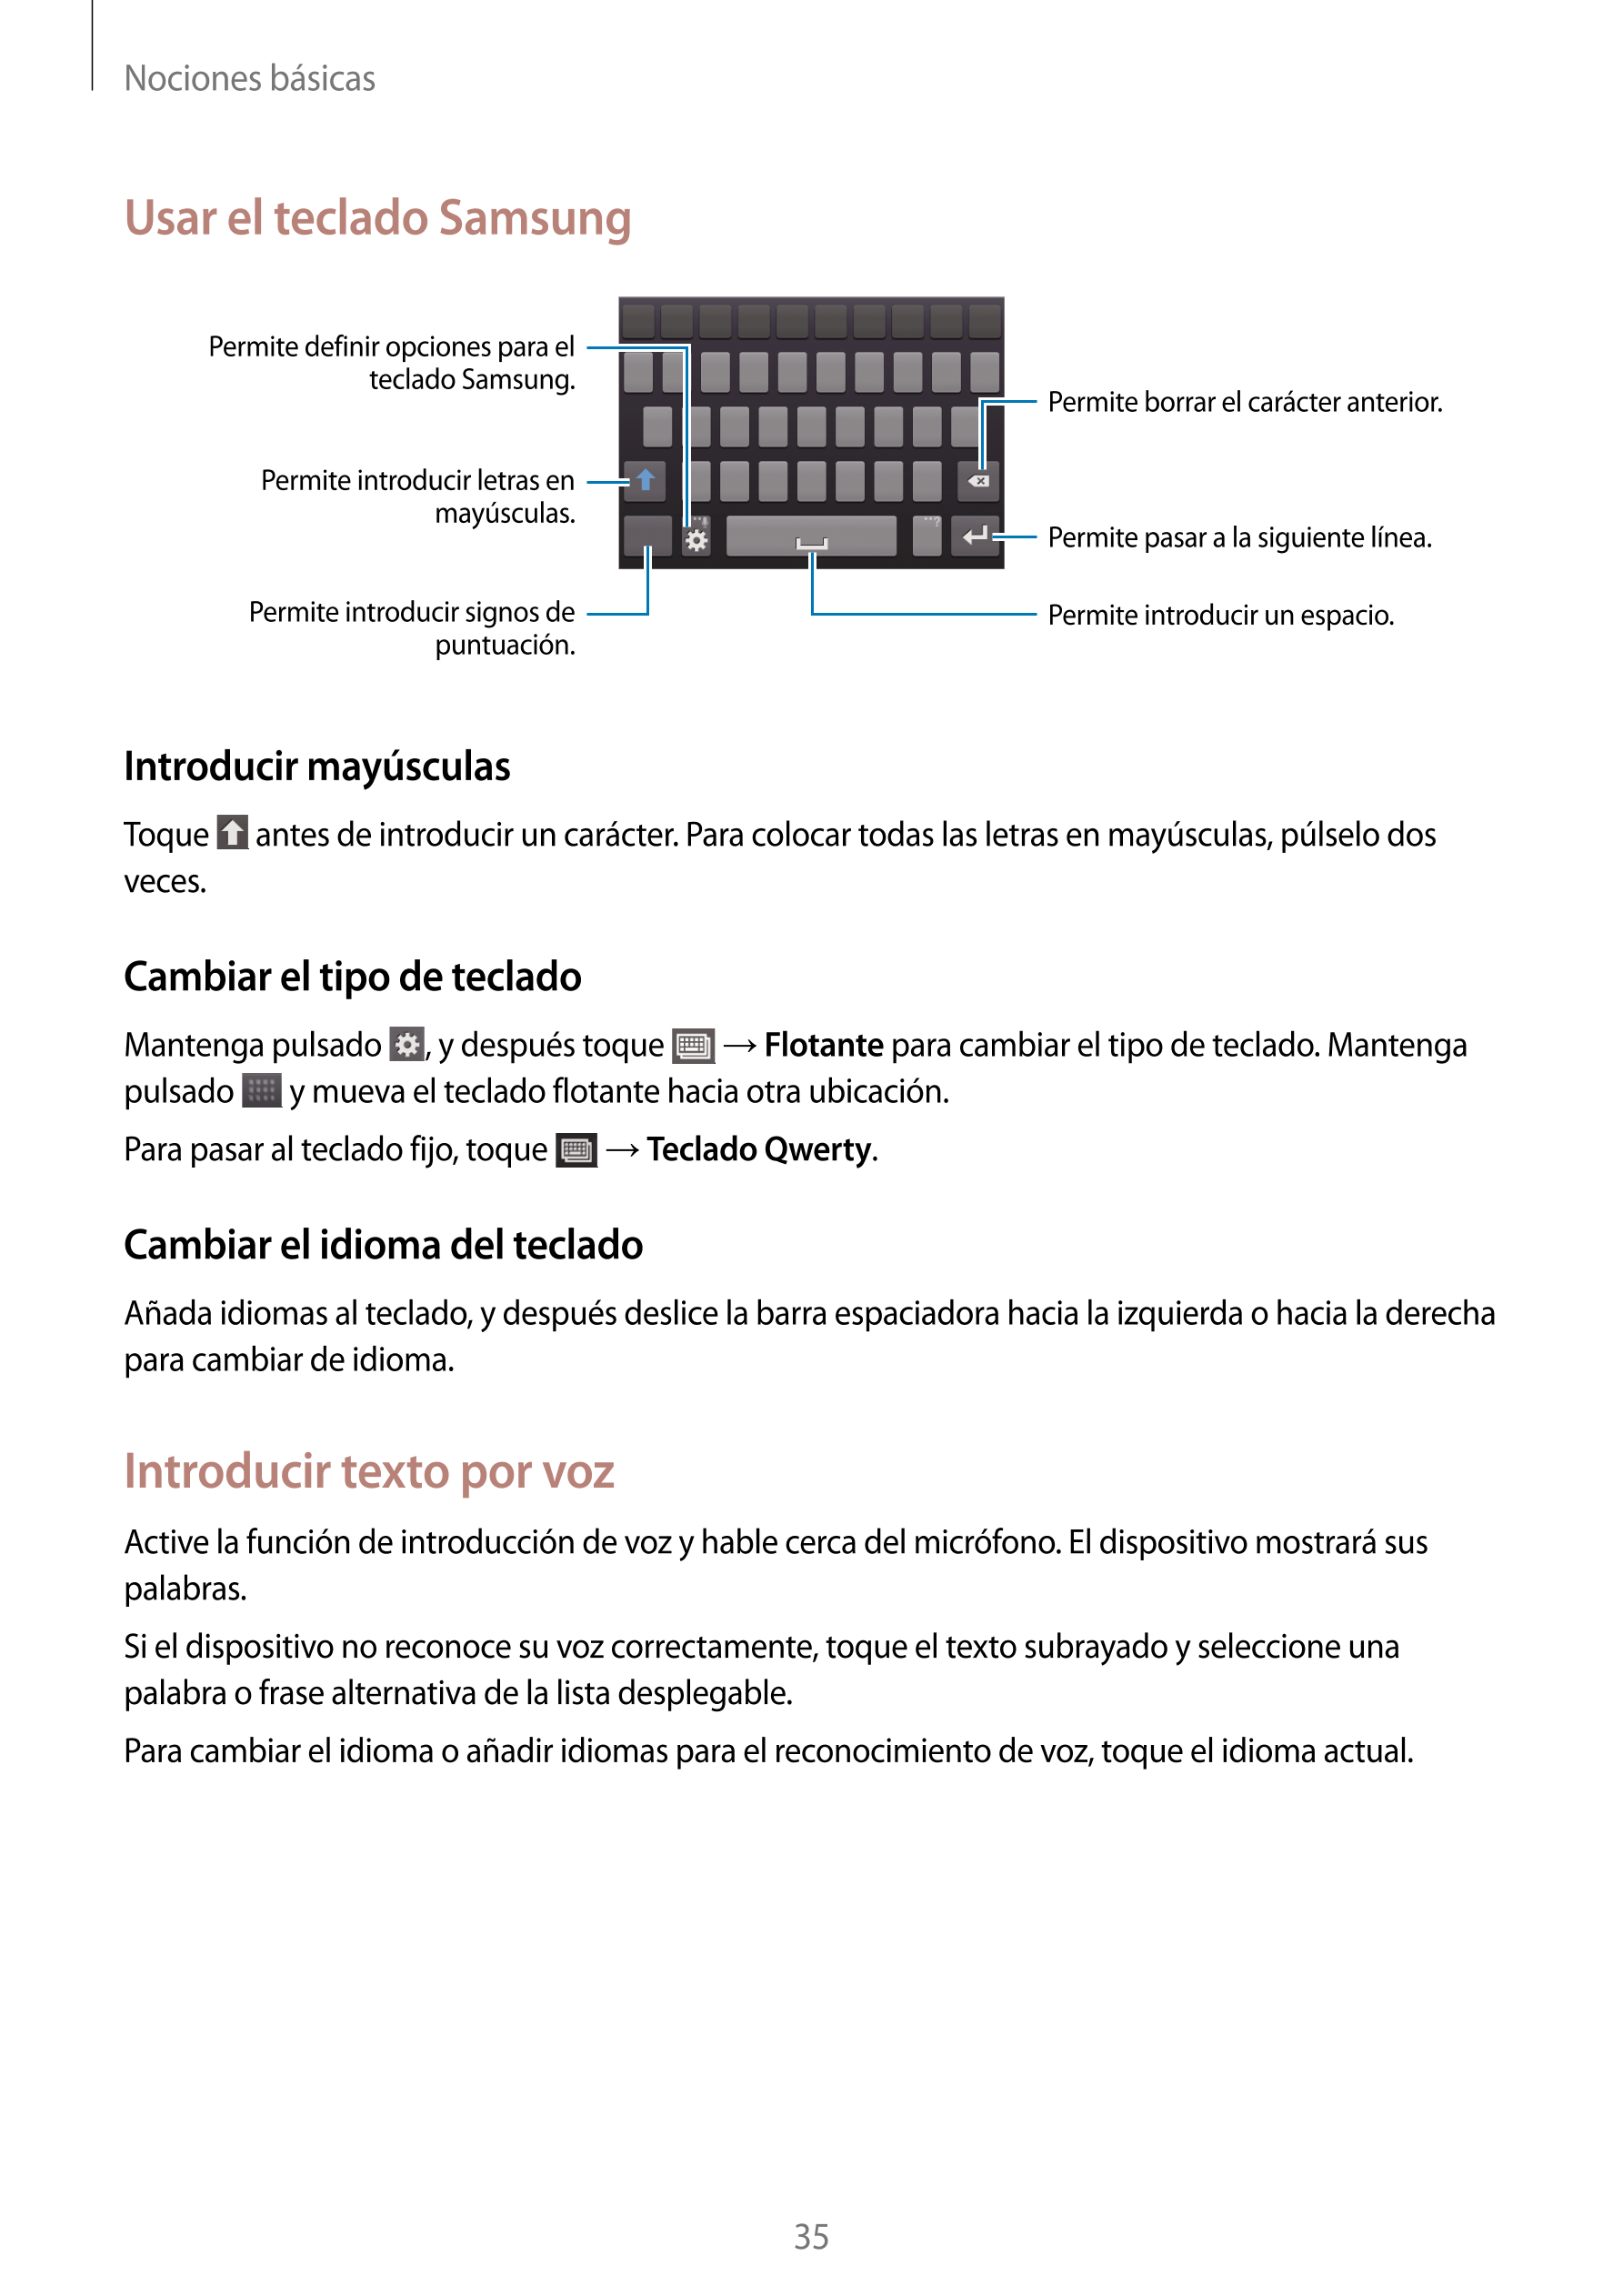 Nociones básicas
Usar el teclado Samsung
Permite definir opciones para el 
teclado Samsung.
Permite borrar el carácter anterior.